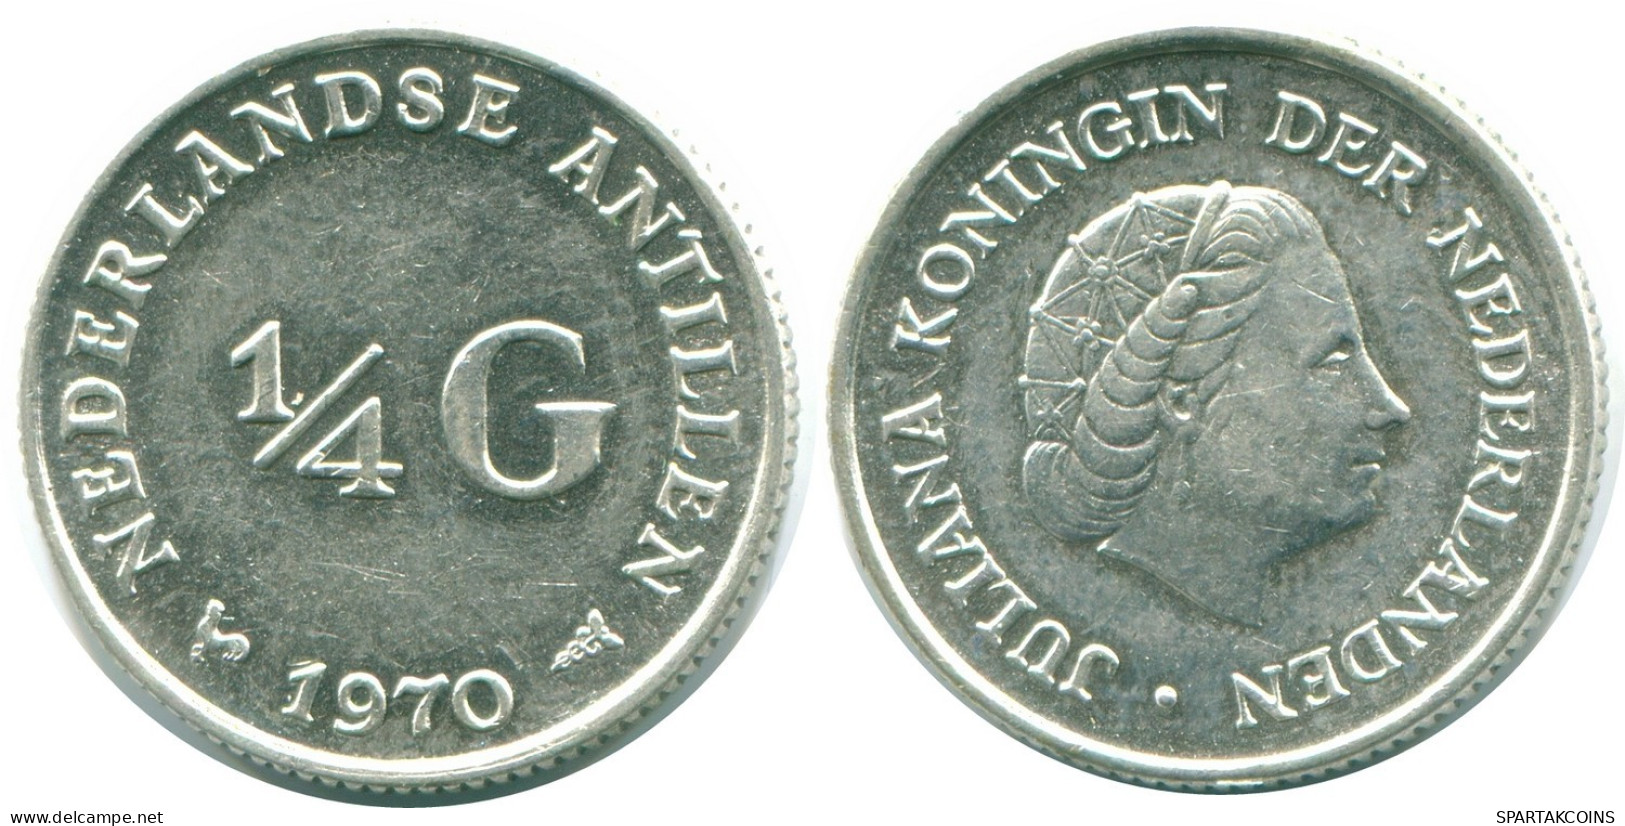 1/4 GULDEN 1970 NIEDERLÄNDISCHE ANTILLEN SILBER Koloniale Münze #NL11613.4.D.A - Niederländische Antillen